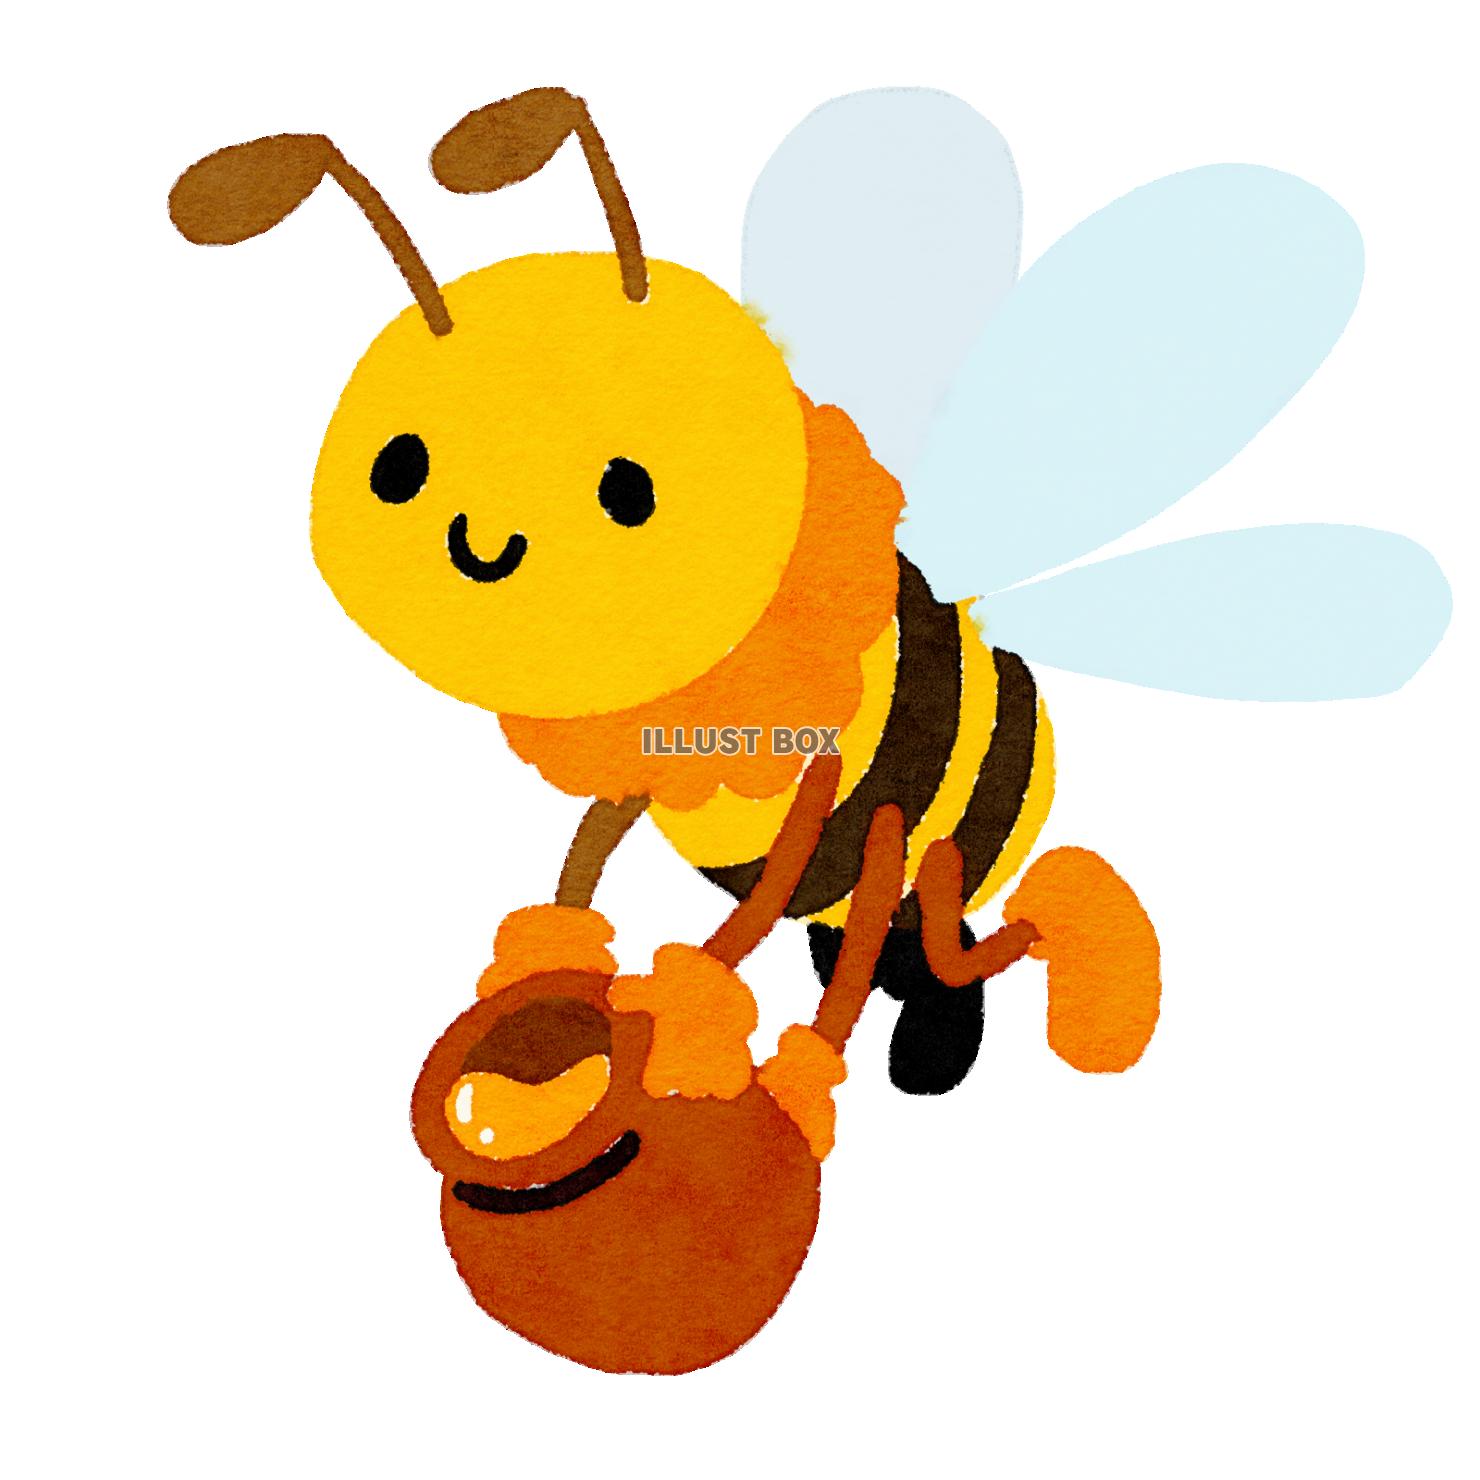 無料イラスト ハチミツを運ぶミツバチ